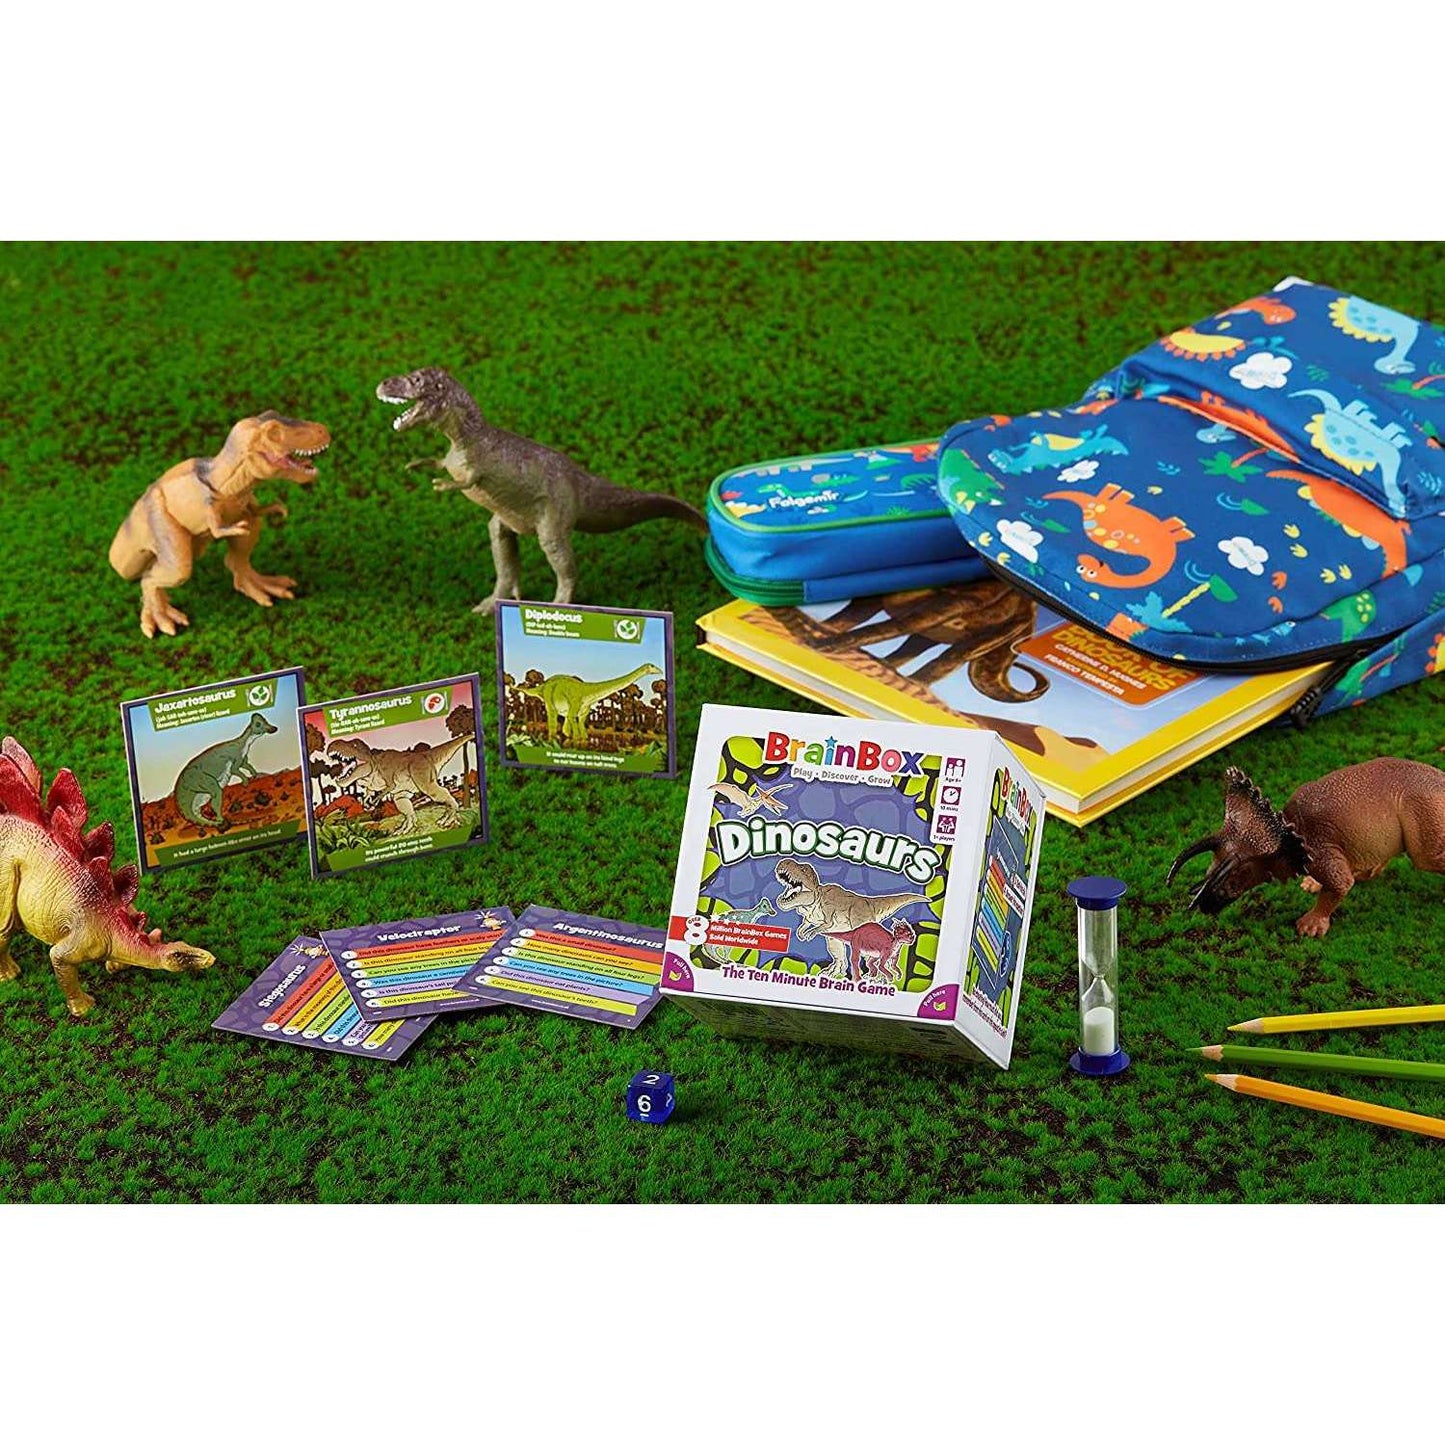 Toys N Tuck:Brainbox - Dinosaurs,Asmodee